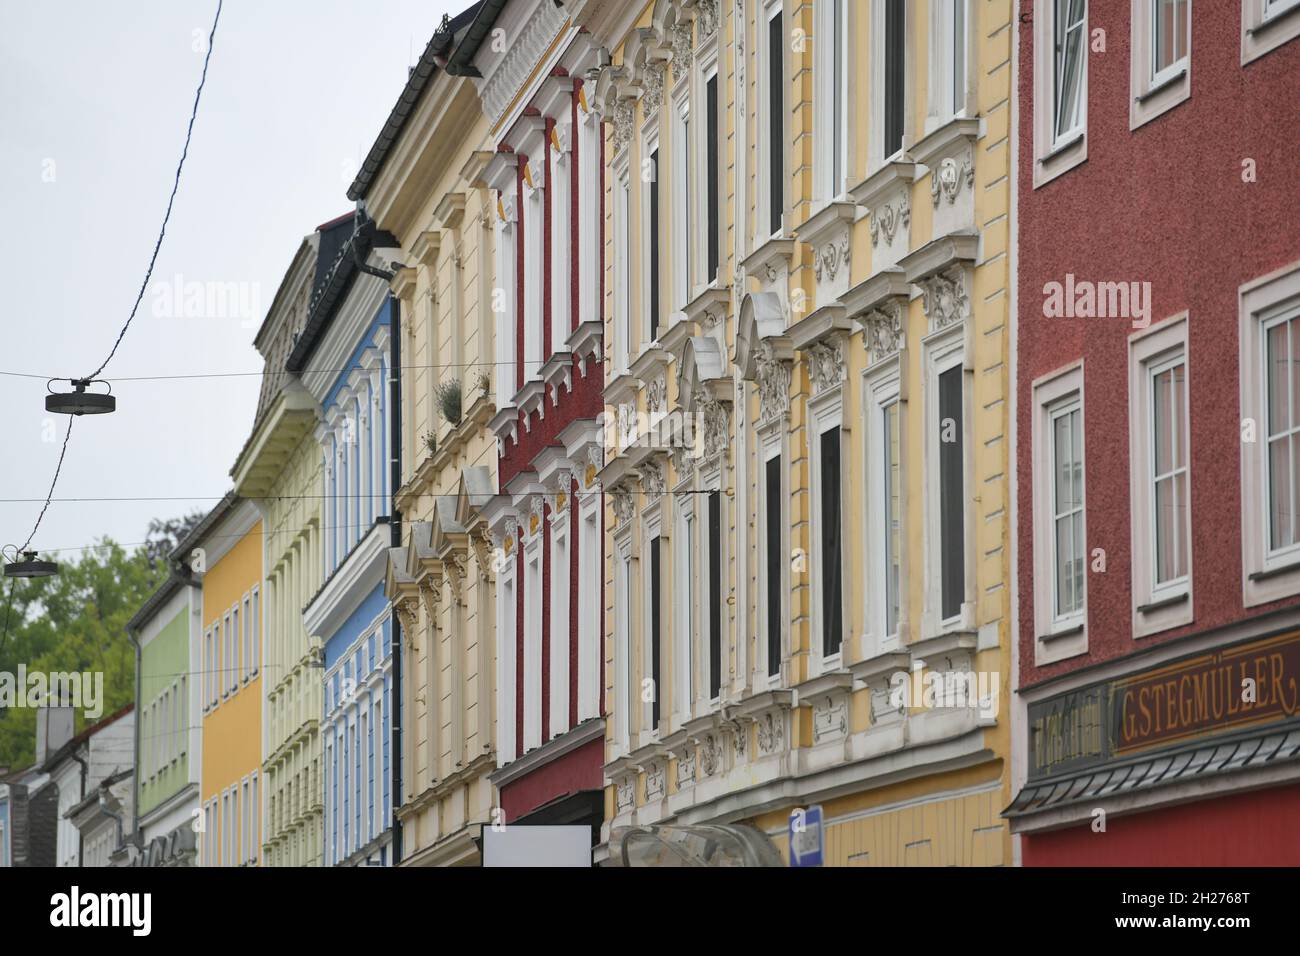 Hausfassaden in Ried im Innkreis, Oberösterreich, Österreich, Europa - House facedes in Ried im Innkreis, Upper Austria, Austria, Europe Stock Photo